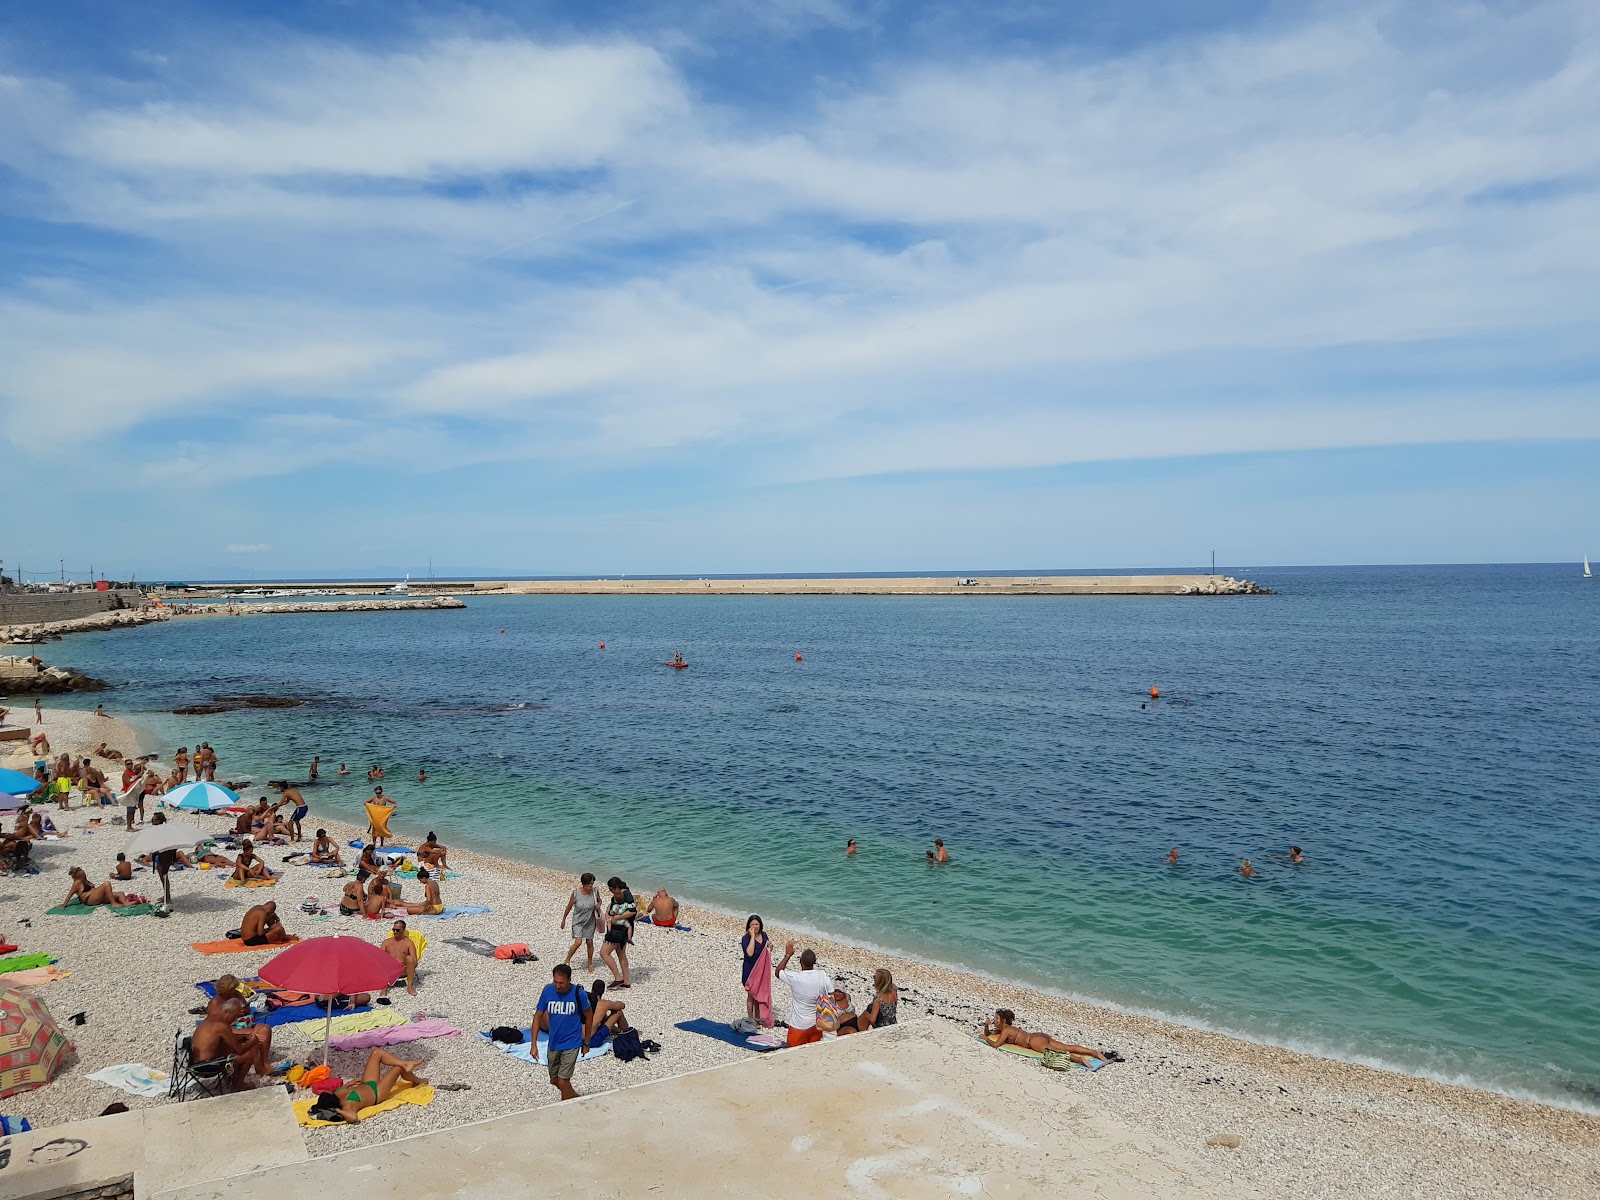 Spiaggia del Macello'in fotoğrafı hafif çakıl yüzey ile